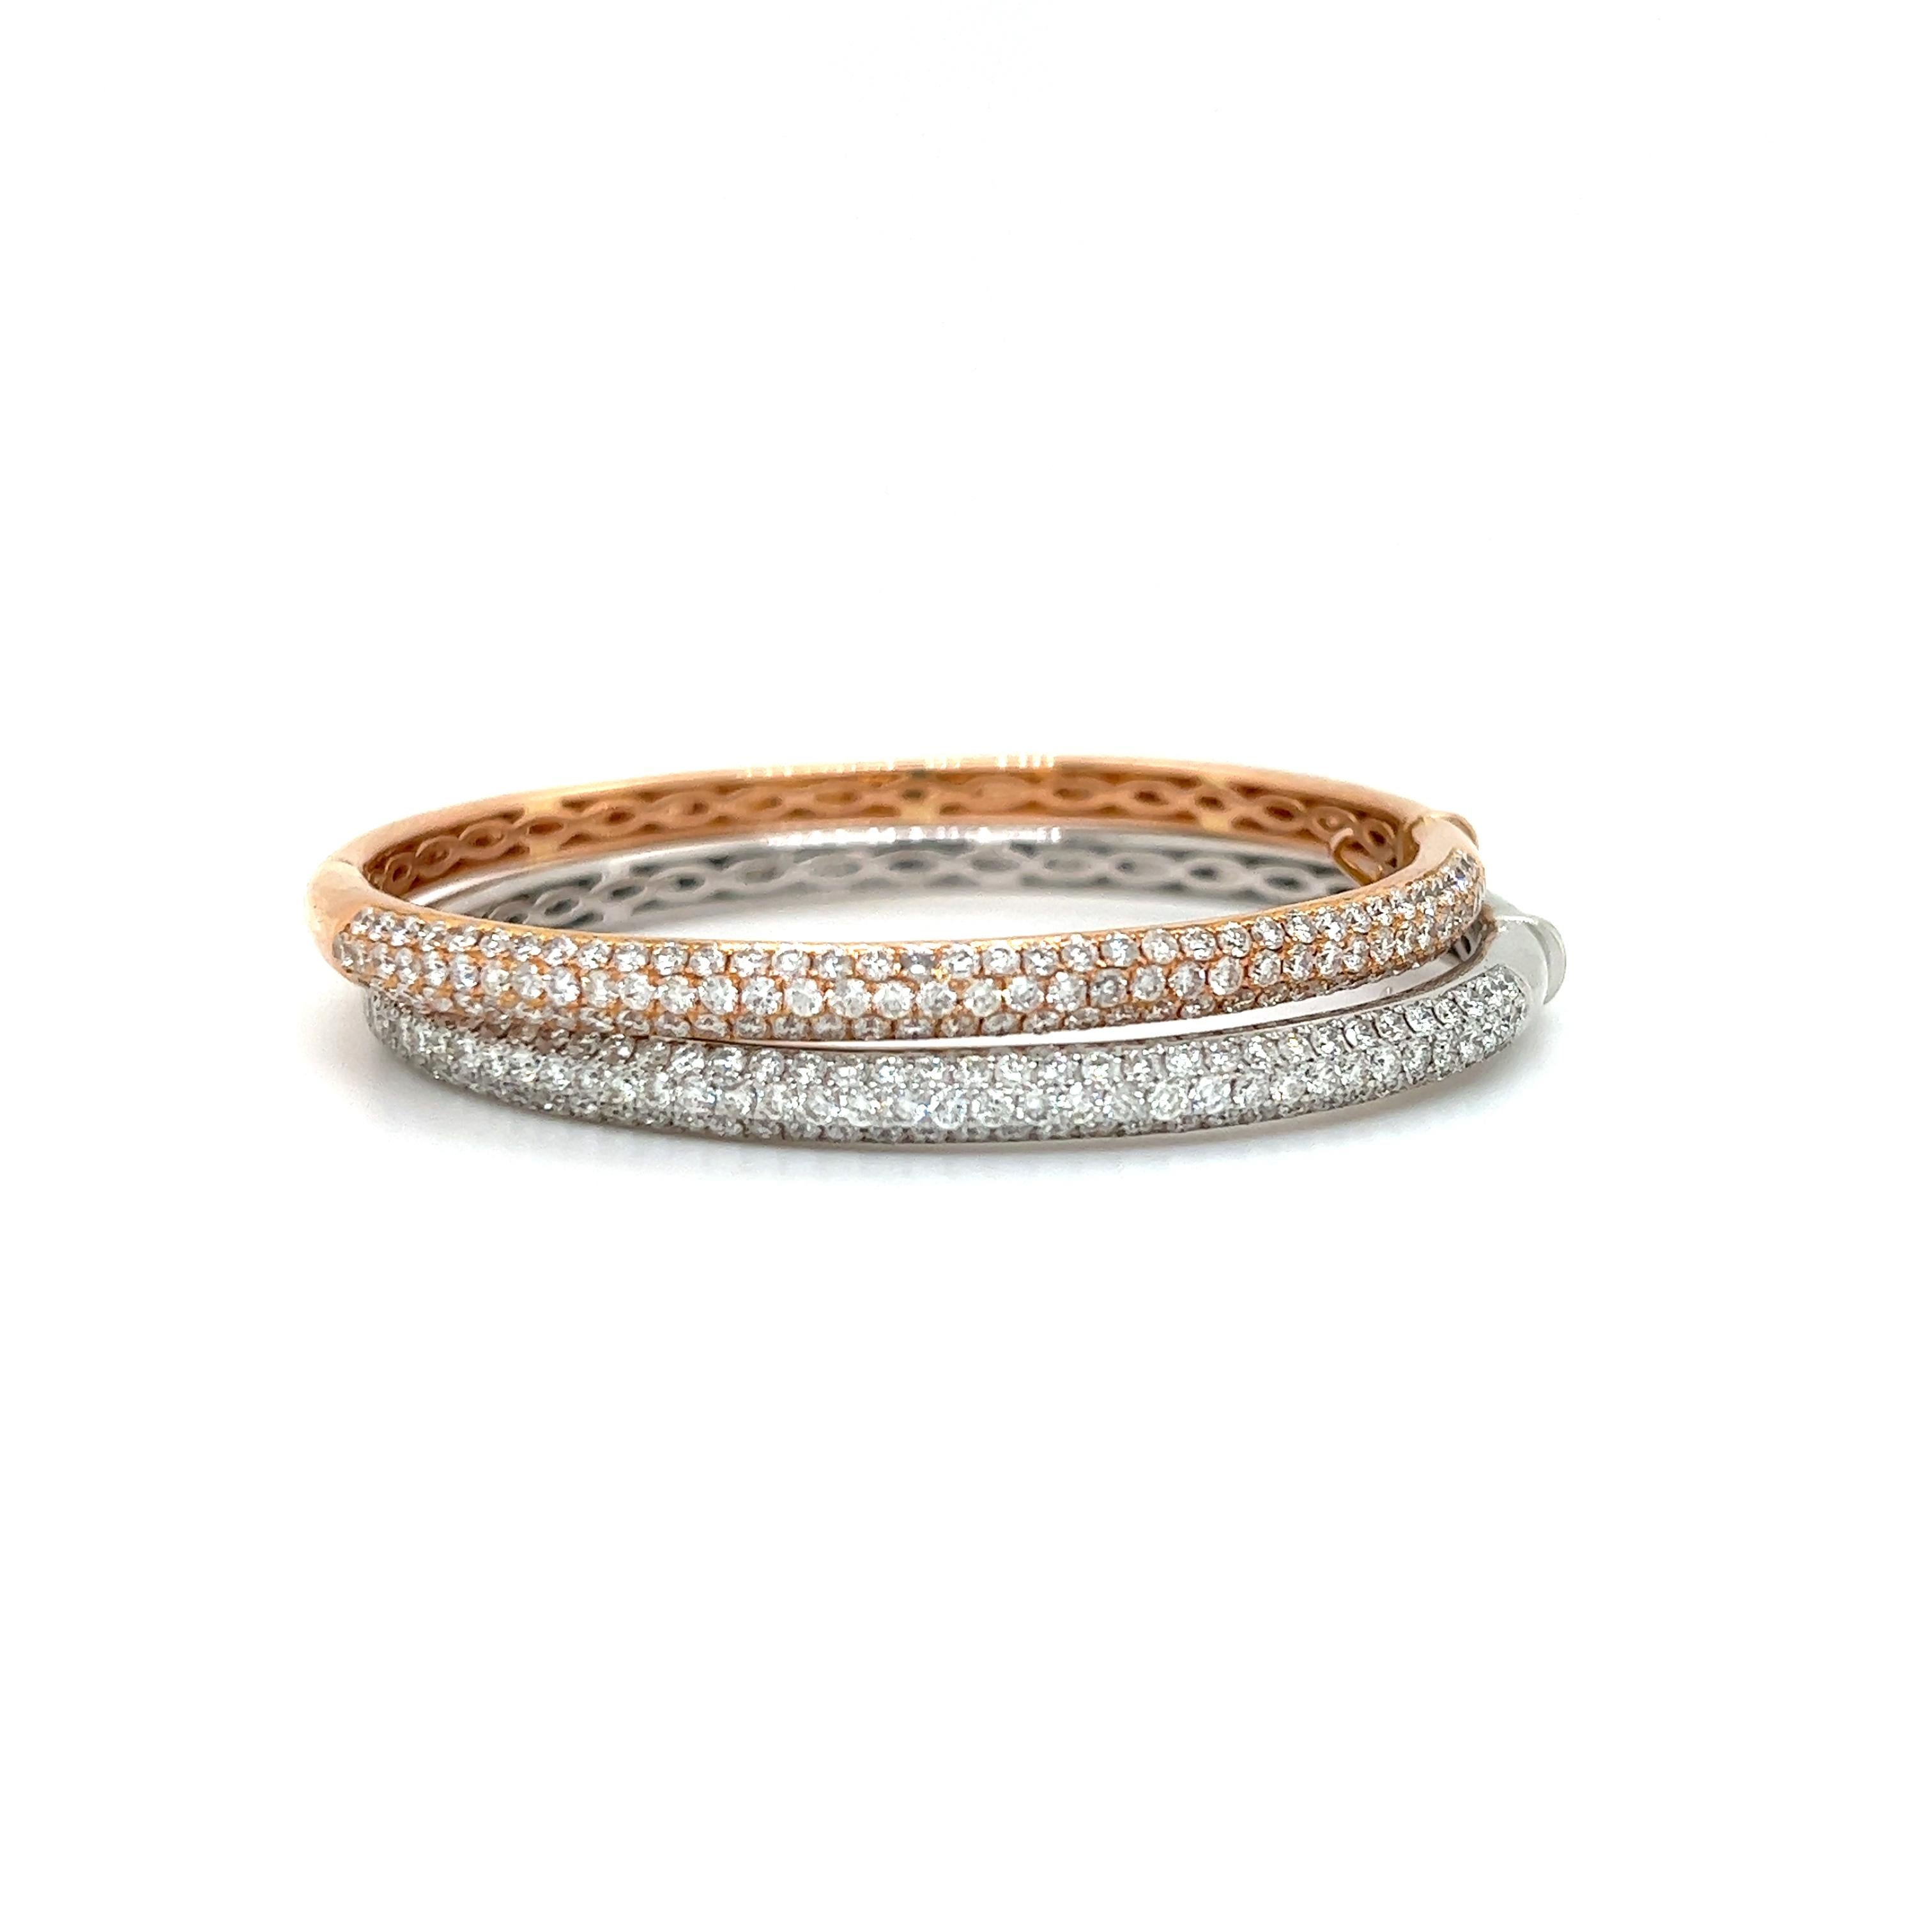 Superbe paire de bracelets bangle en or blanc et jaune 18k et diamants. La paire est sertie de diamants ronds naturels de taille brillant. Les diamants sont sertis en trois rangs sur la moitié supérieure du modèle.  L'ensemble des bracelets est